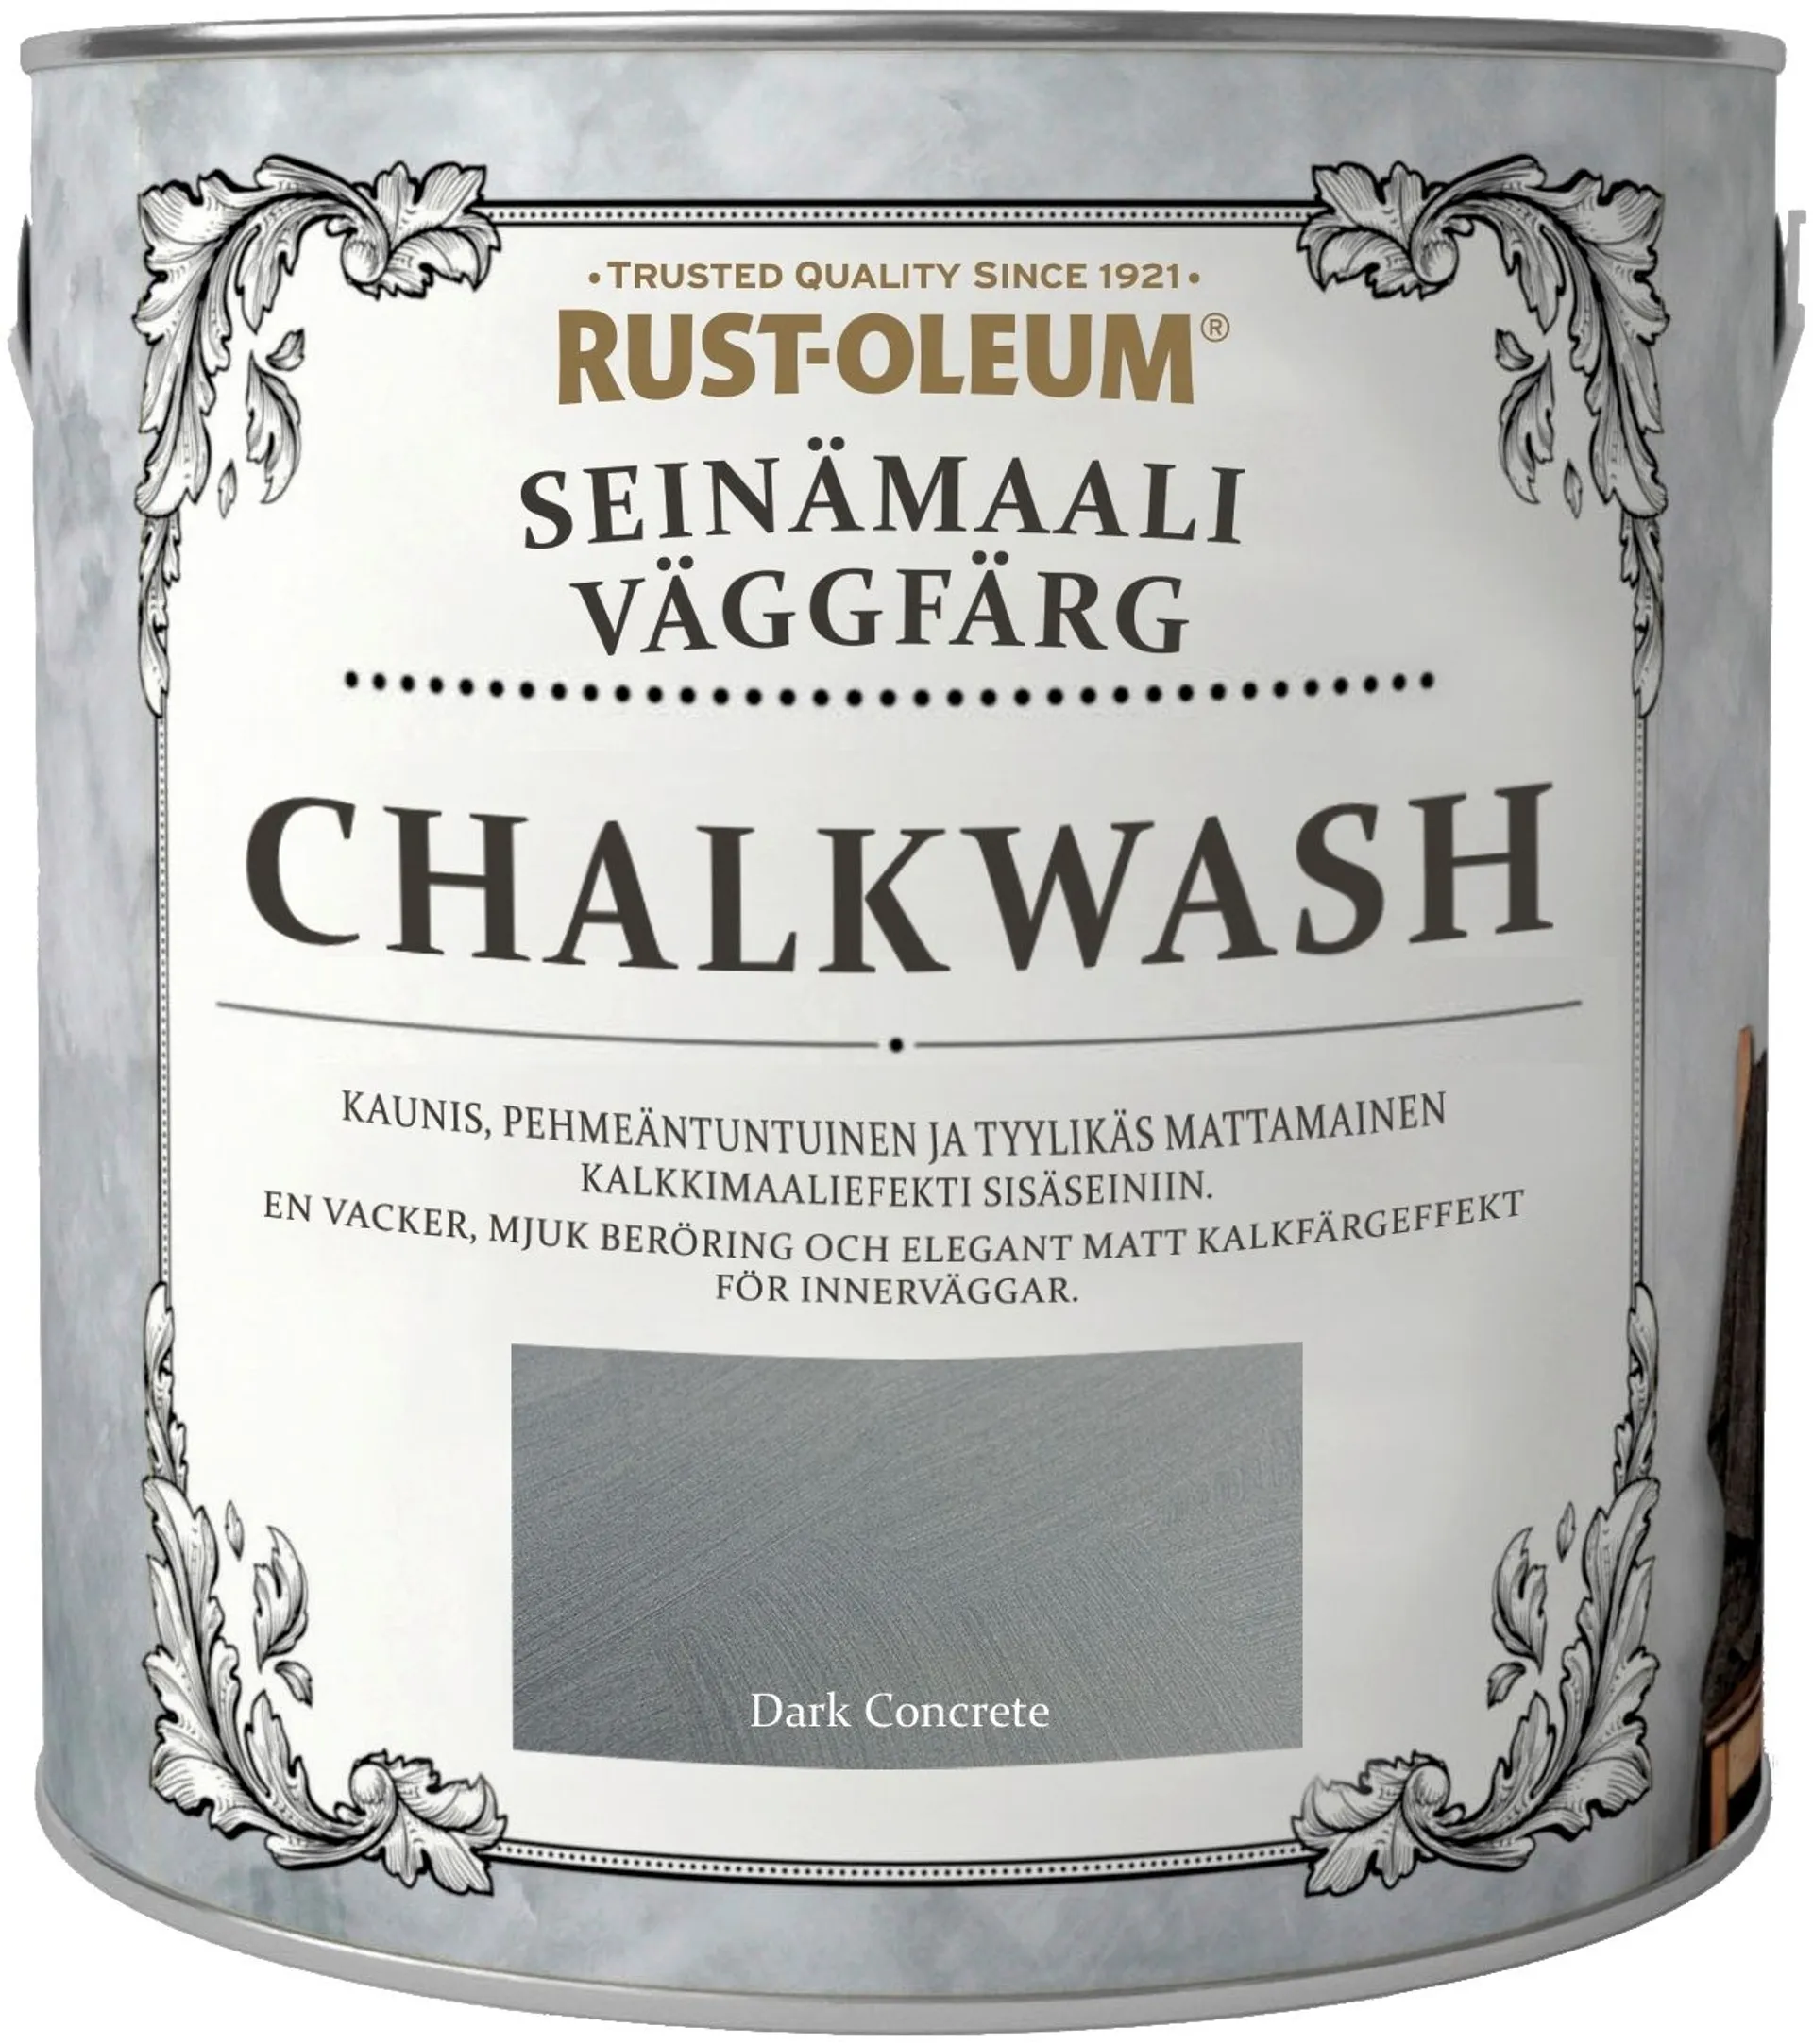 Rust-Oleum Chalkwash 2,5L Dark Concrete Seinämaali - 1